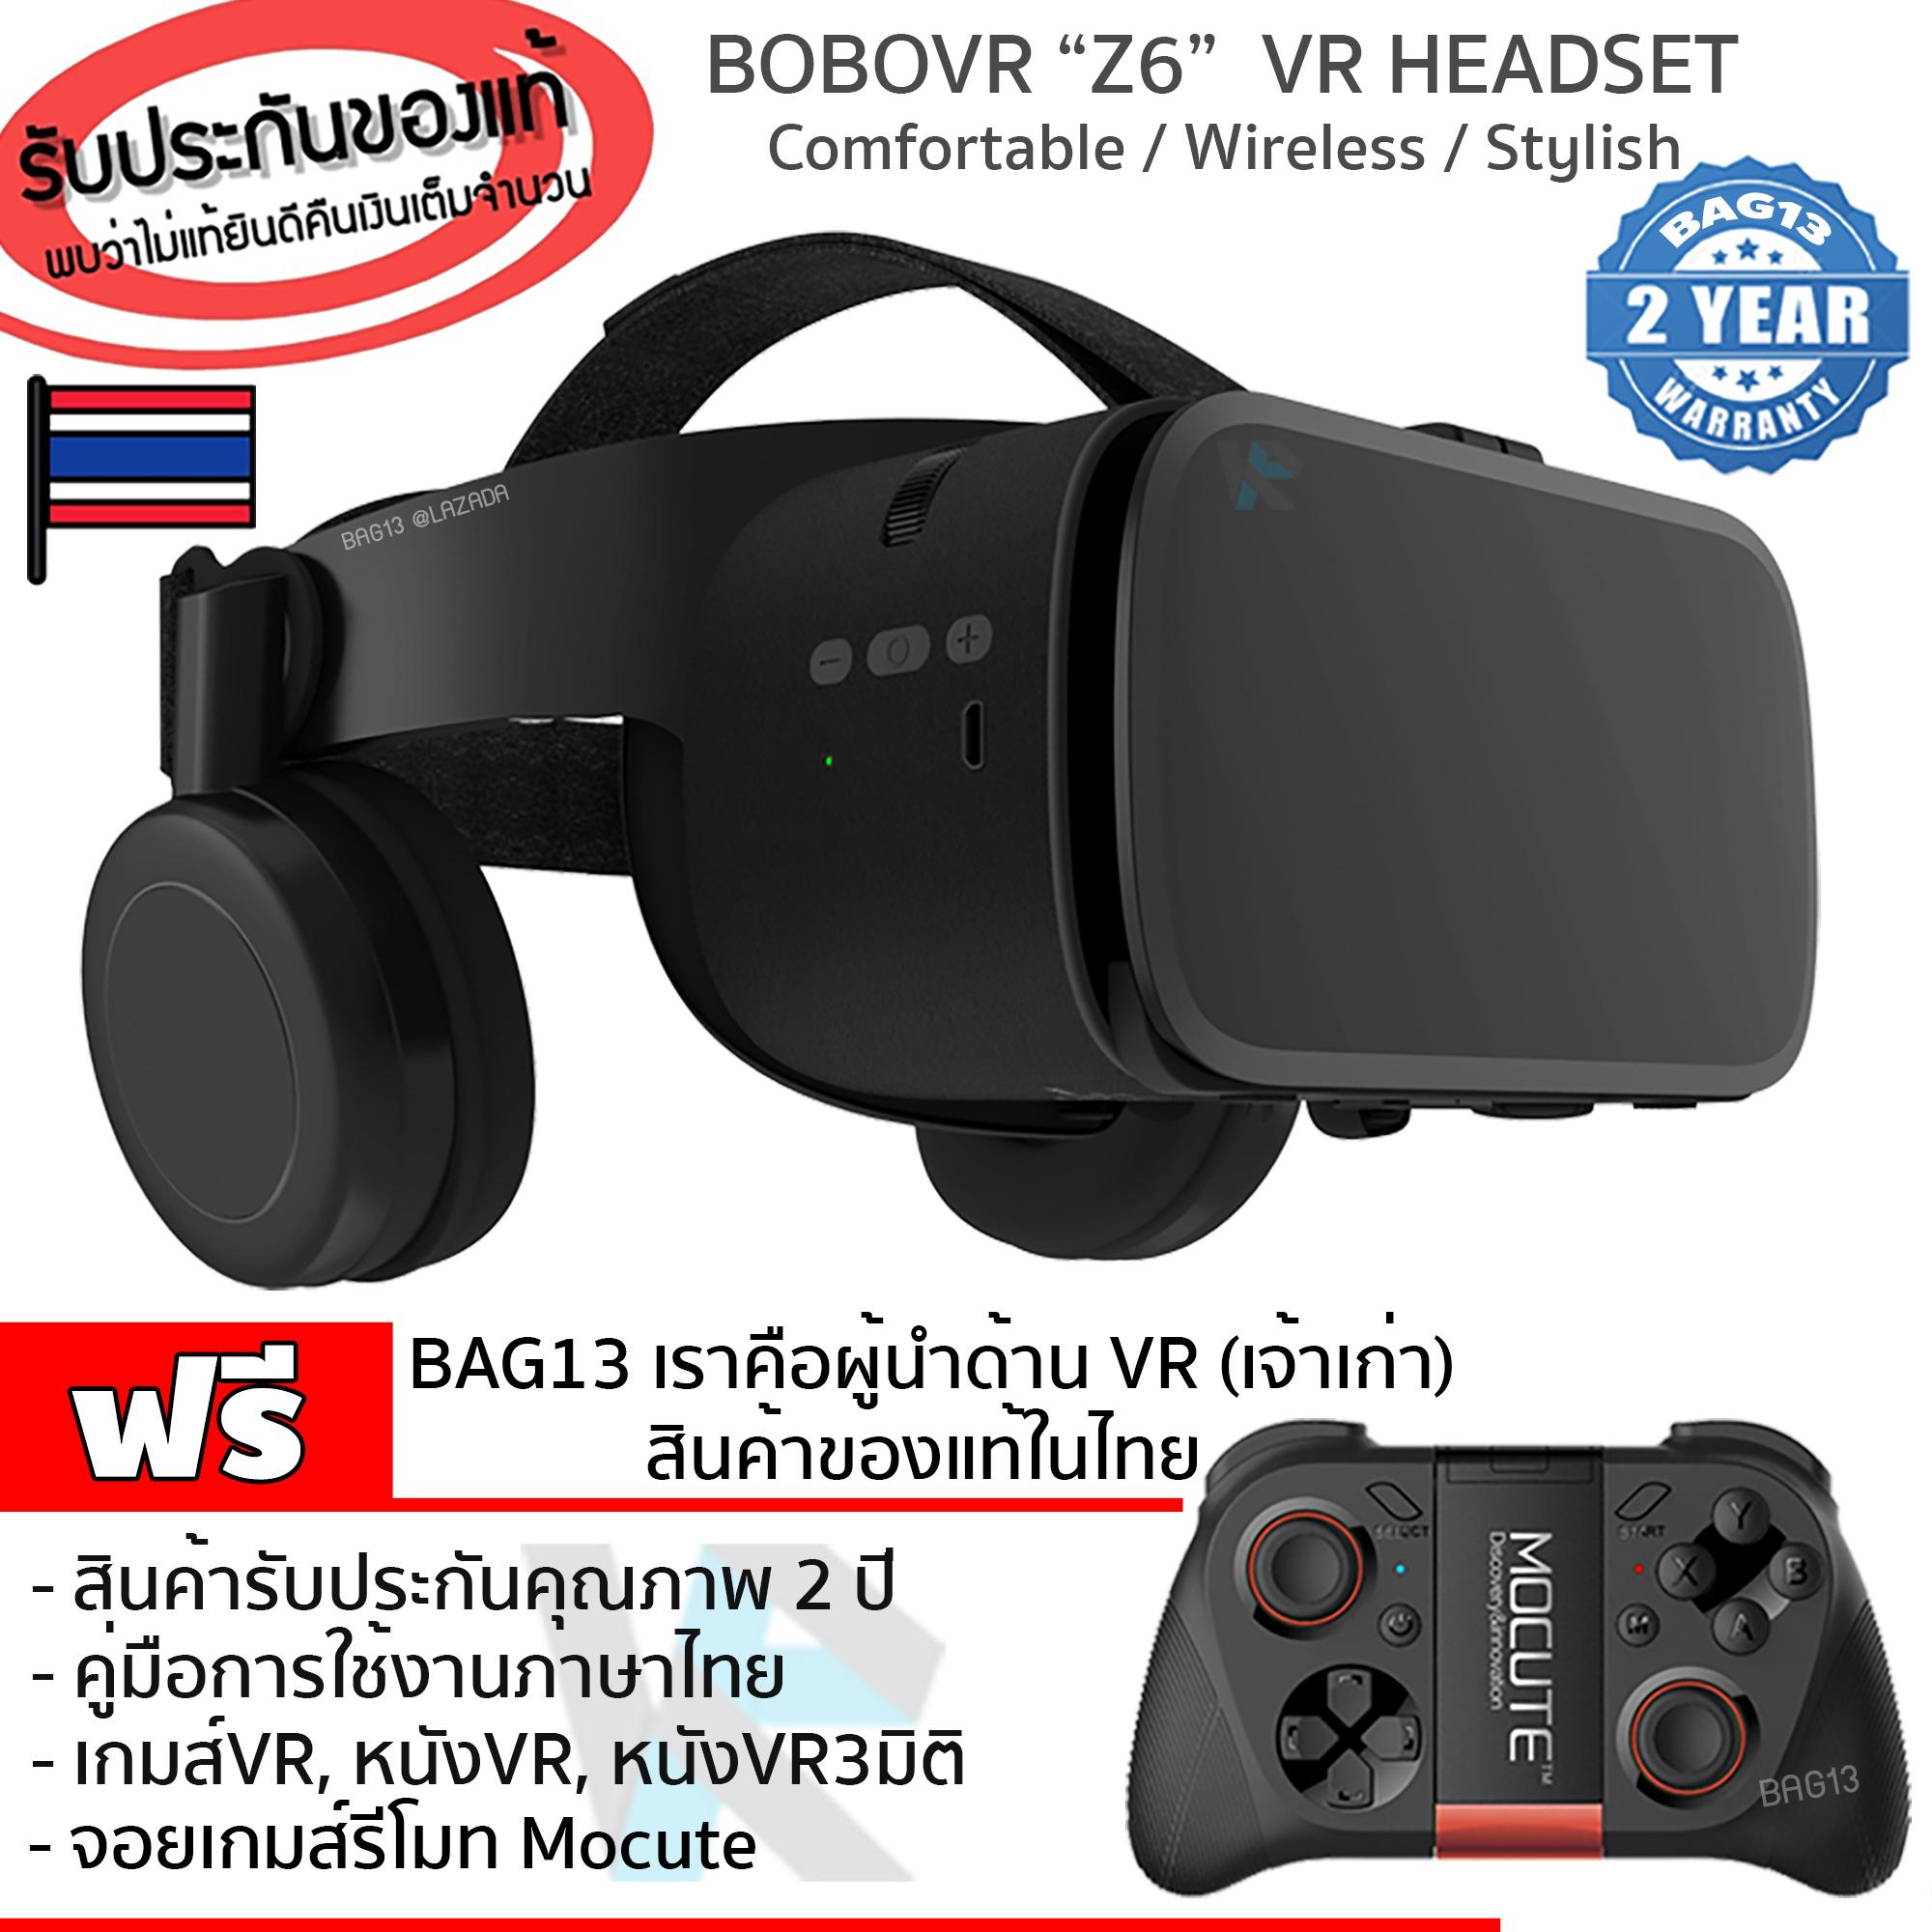 แว่นVR BOBOVR Z6 รุ่นใหม่ล่าสุด สุดยอดแว่นVR Headsetดีที่สุด ของแท้100% (Black Edition) 3D VR Glasses แว่นตาดูหนัง 3D อัจฉริยะ สำหรับโทรศัพท์สมาร์ทโฟนทุกรุ่น(สีดำ) แถมฟรี จอยเกมส์ Mocute